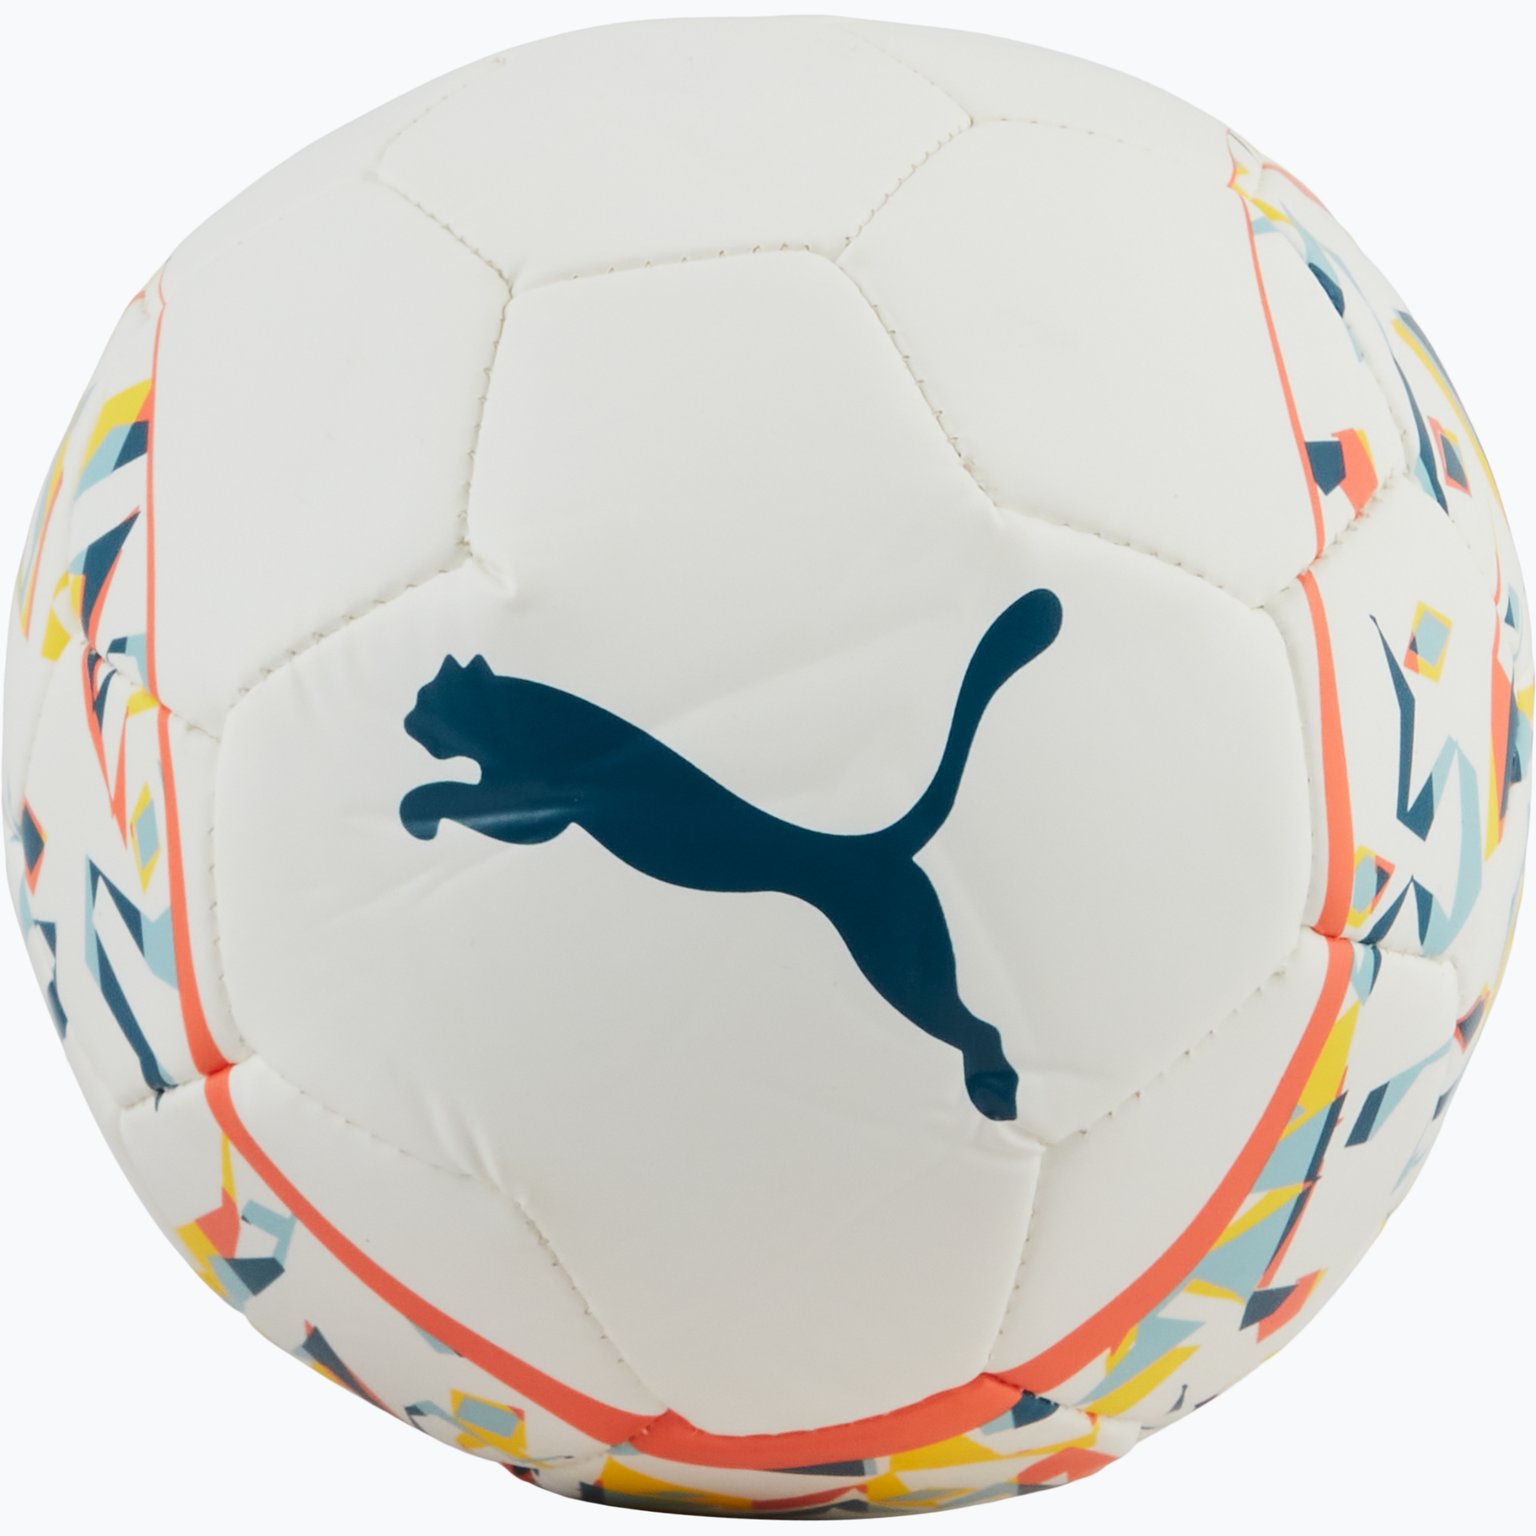 Neymar Jr Graphic Mini fotboll